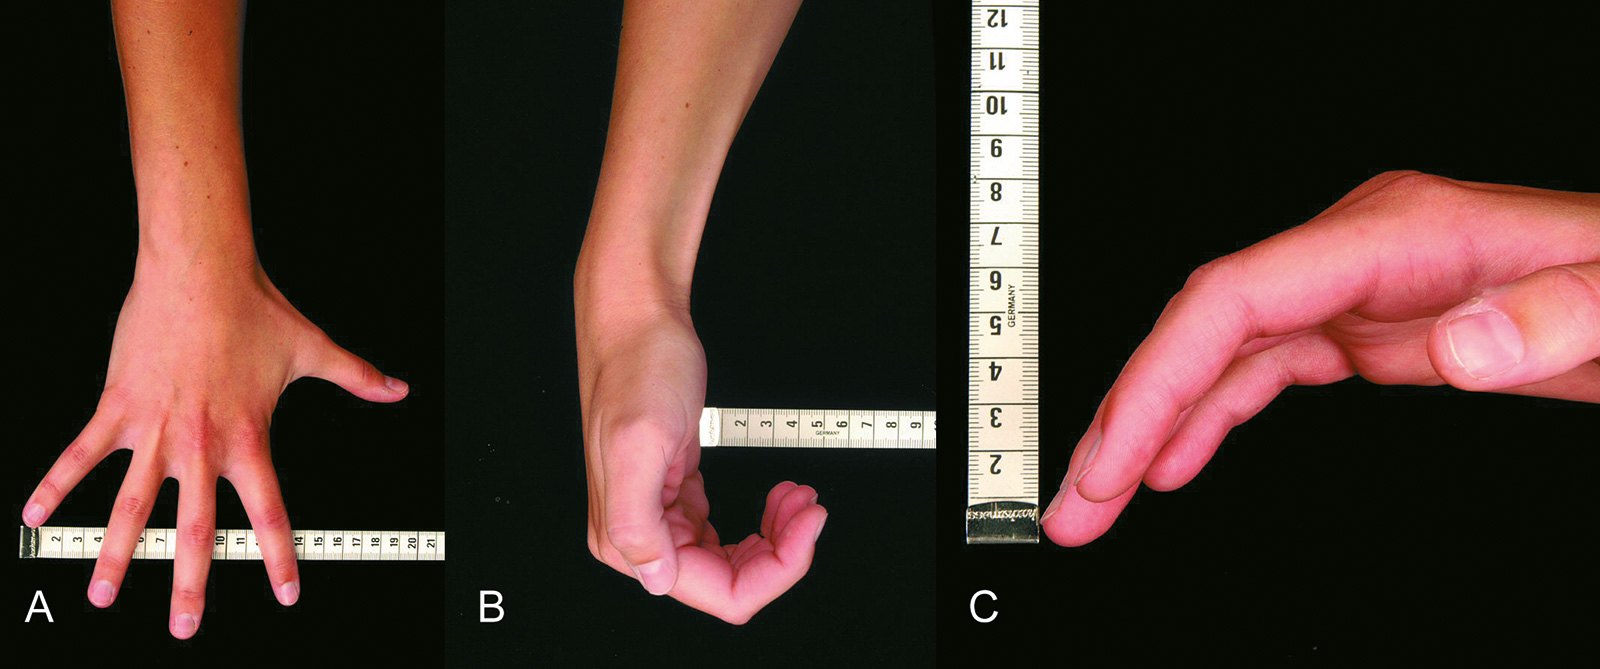 Abb. 7-30: Fingerspreizung in den Grundgelenken (A), Quantifizieren der Fähigkeit zum Faustschluss (B,C)